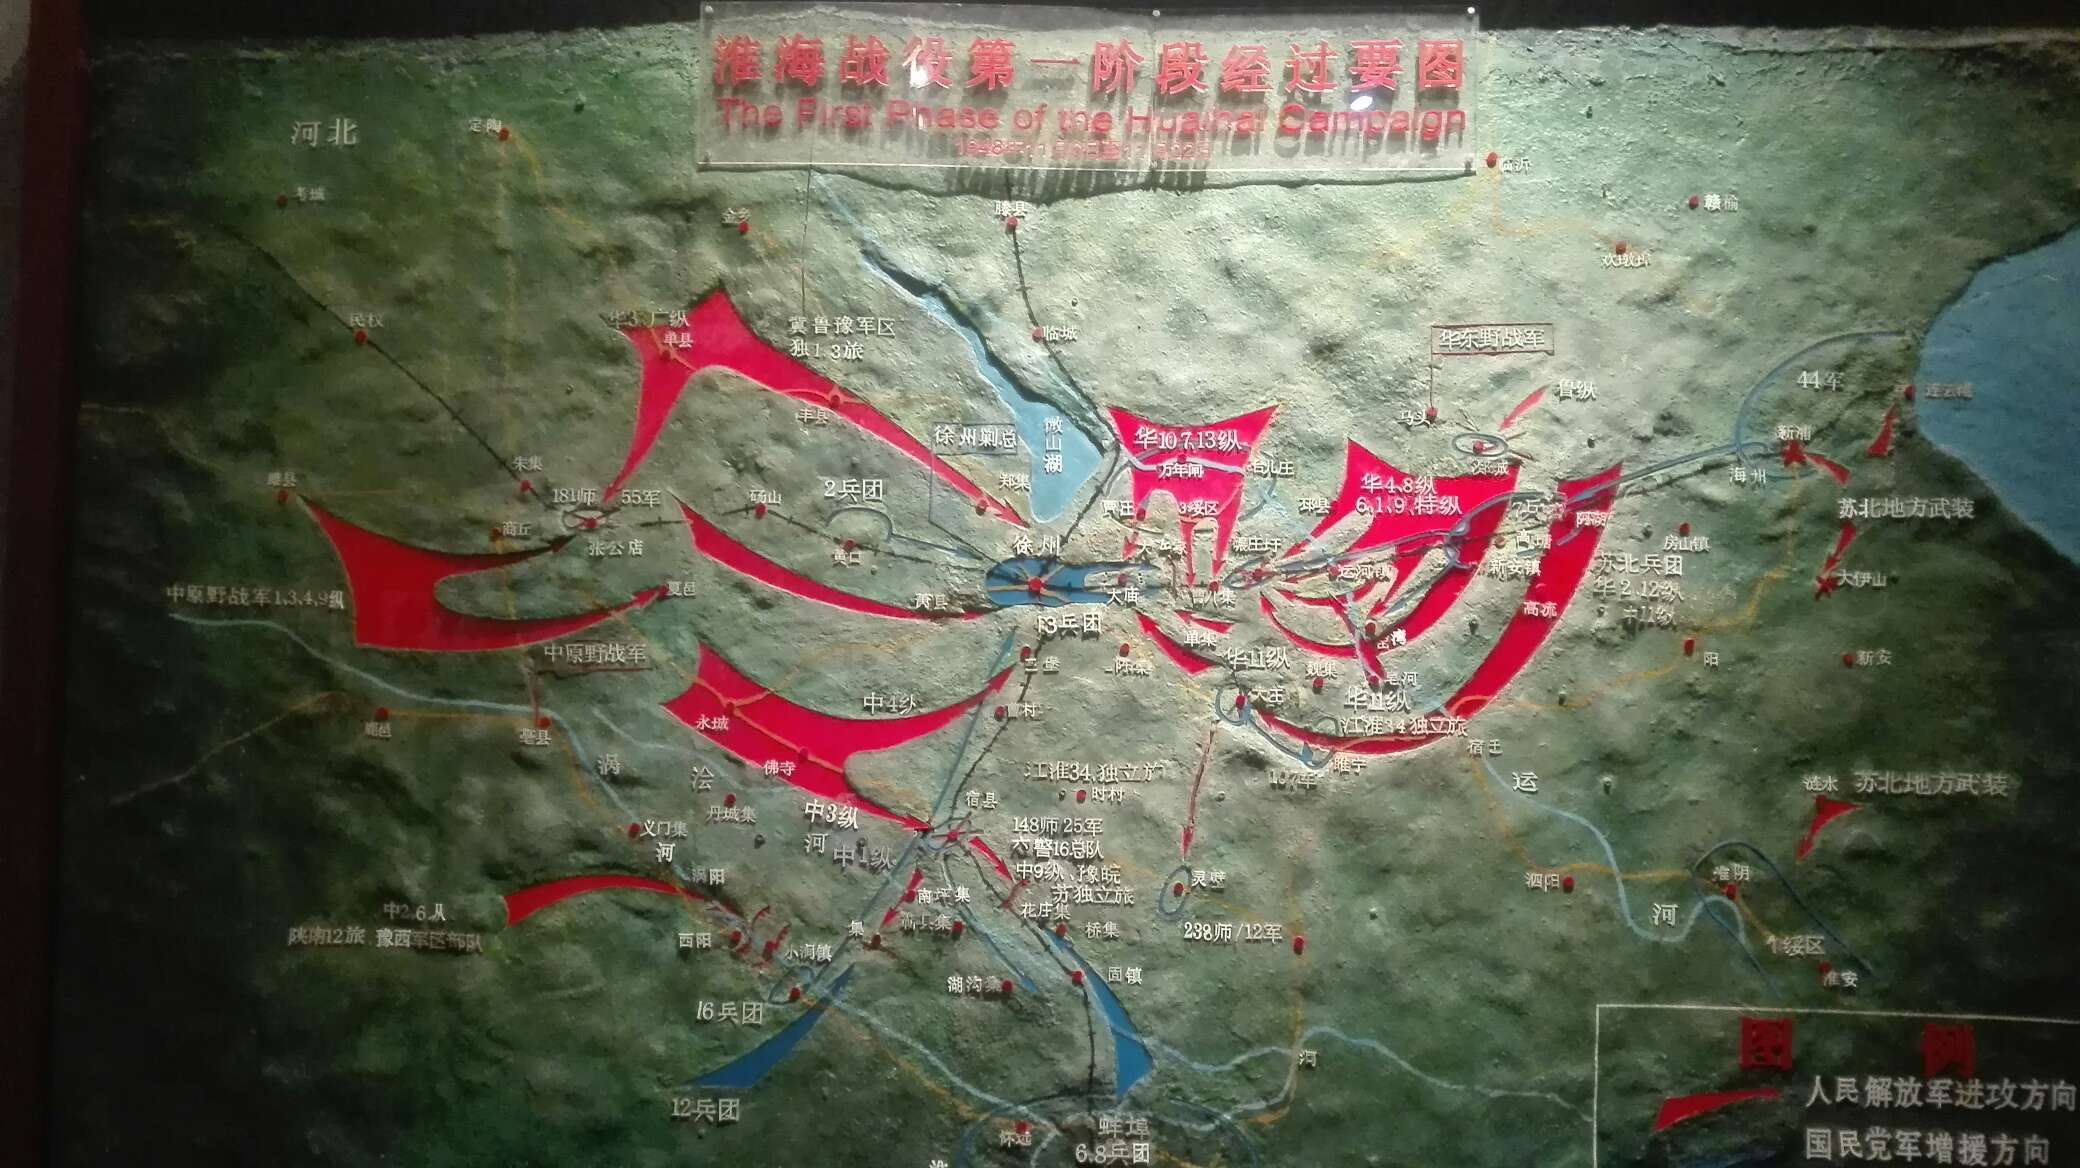 一些淮海战役地图摄于徐州淮海战役纪念馆